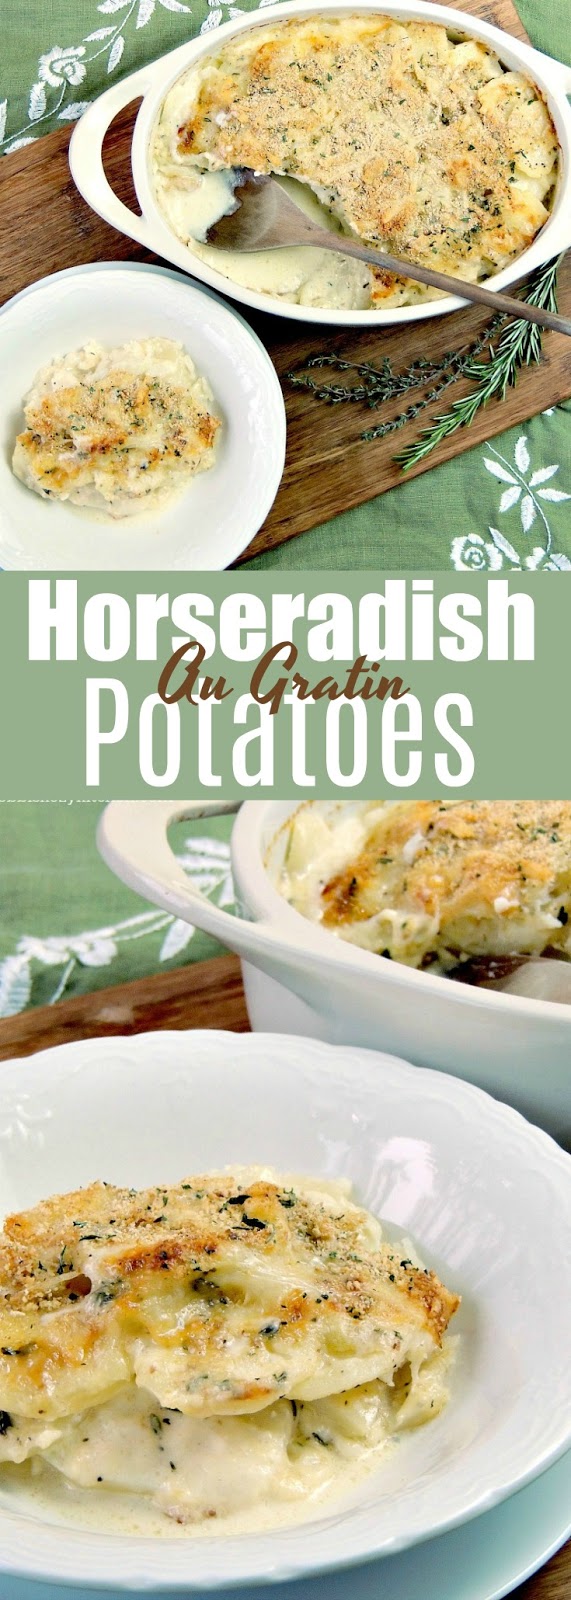 Horseradish Au Gratin Potatoes | Bobbi's Kozy Kitchen